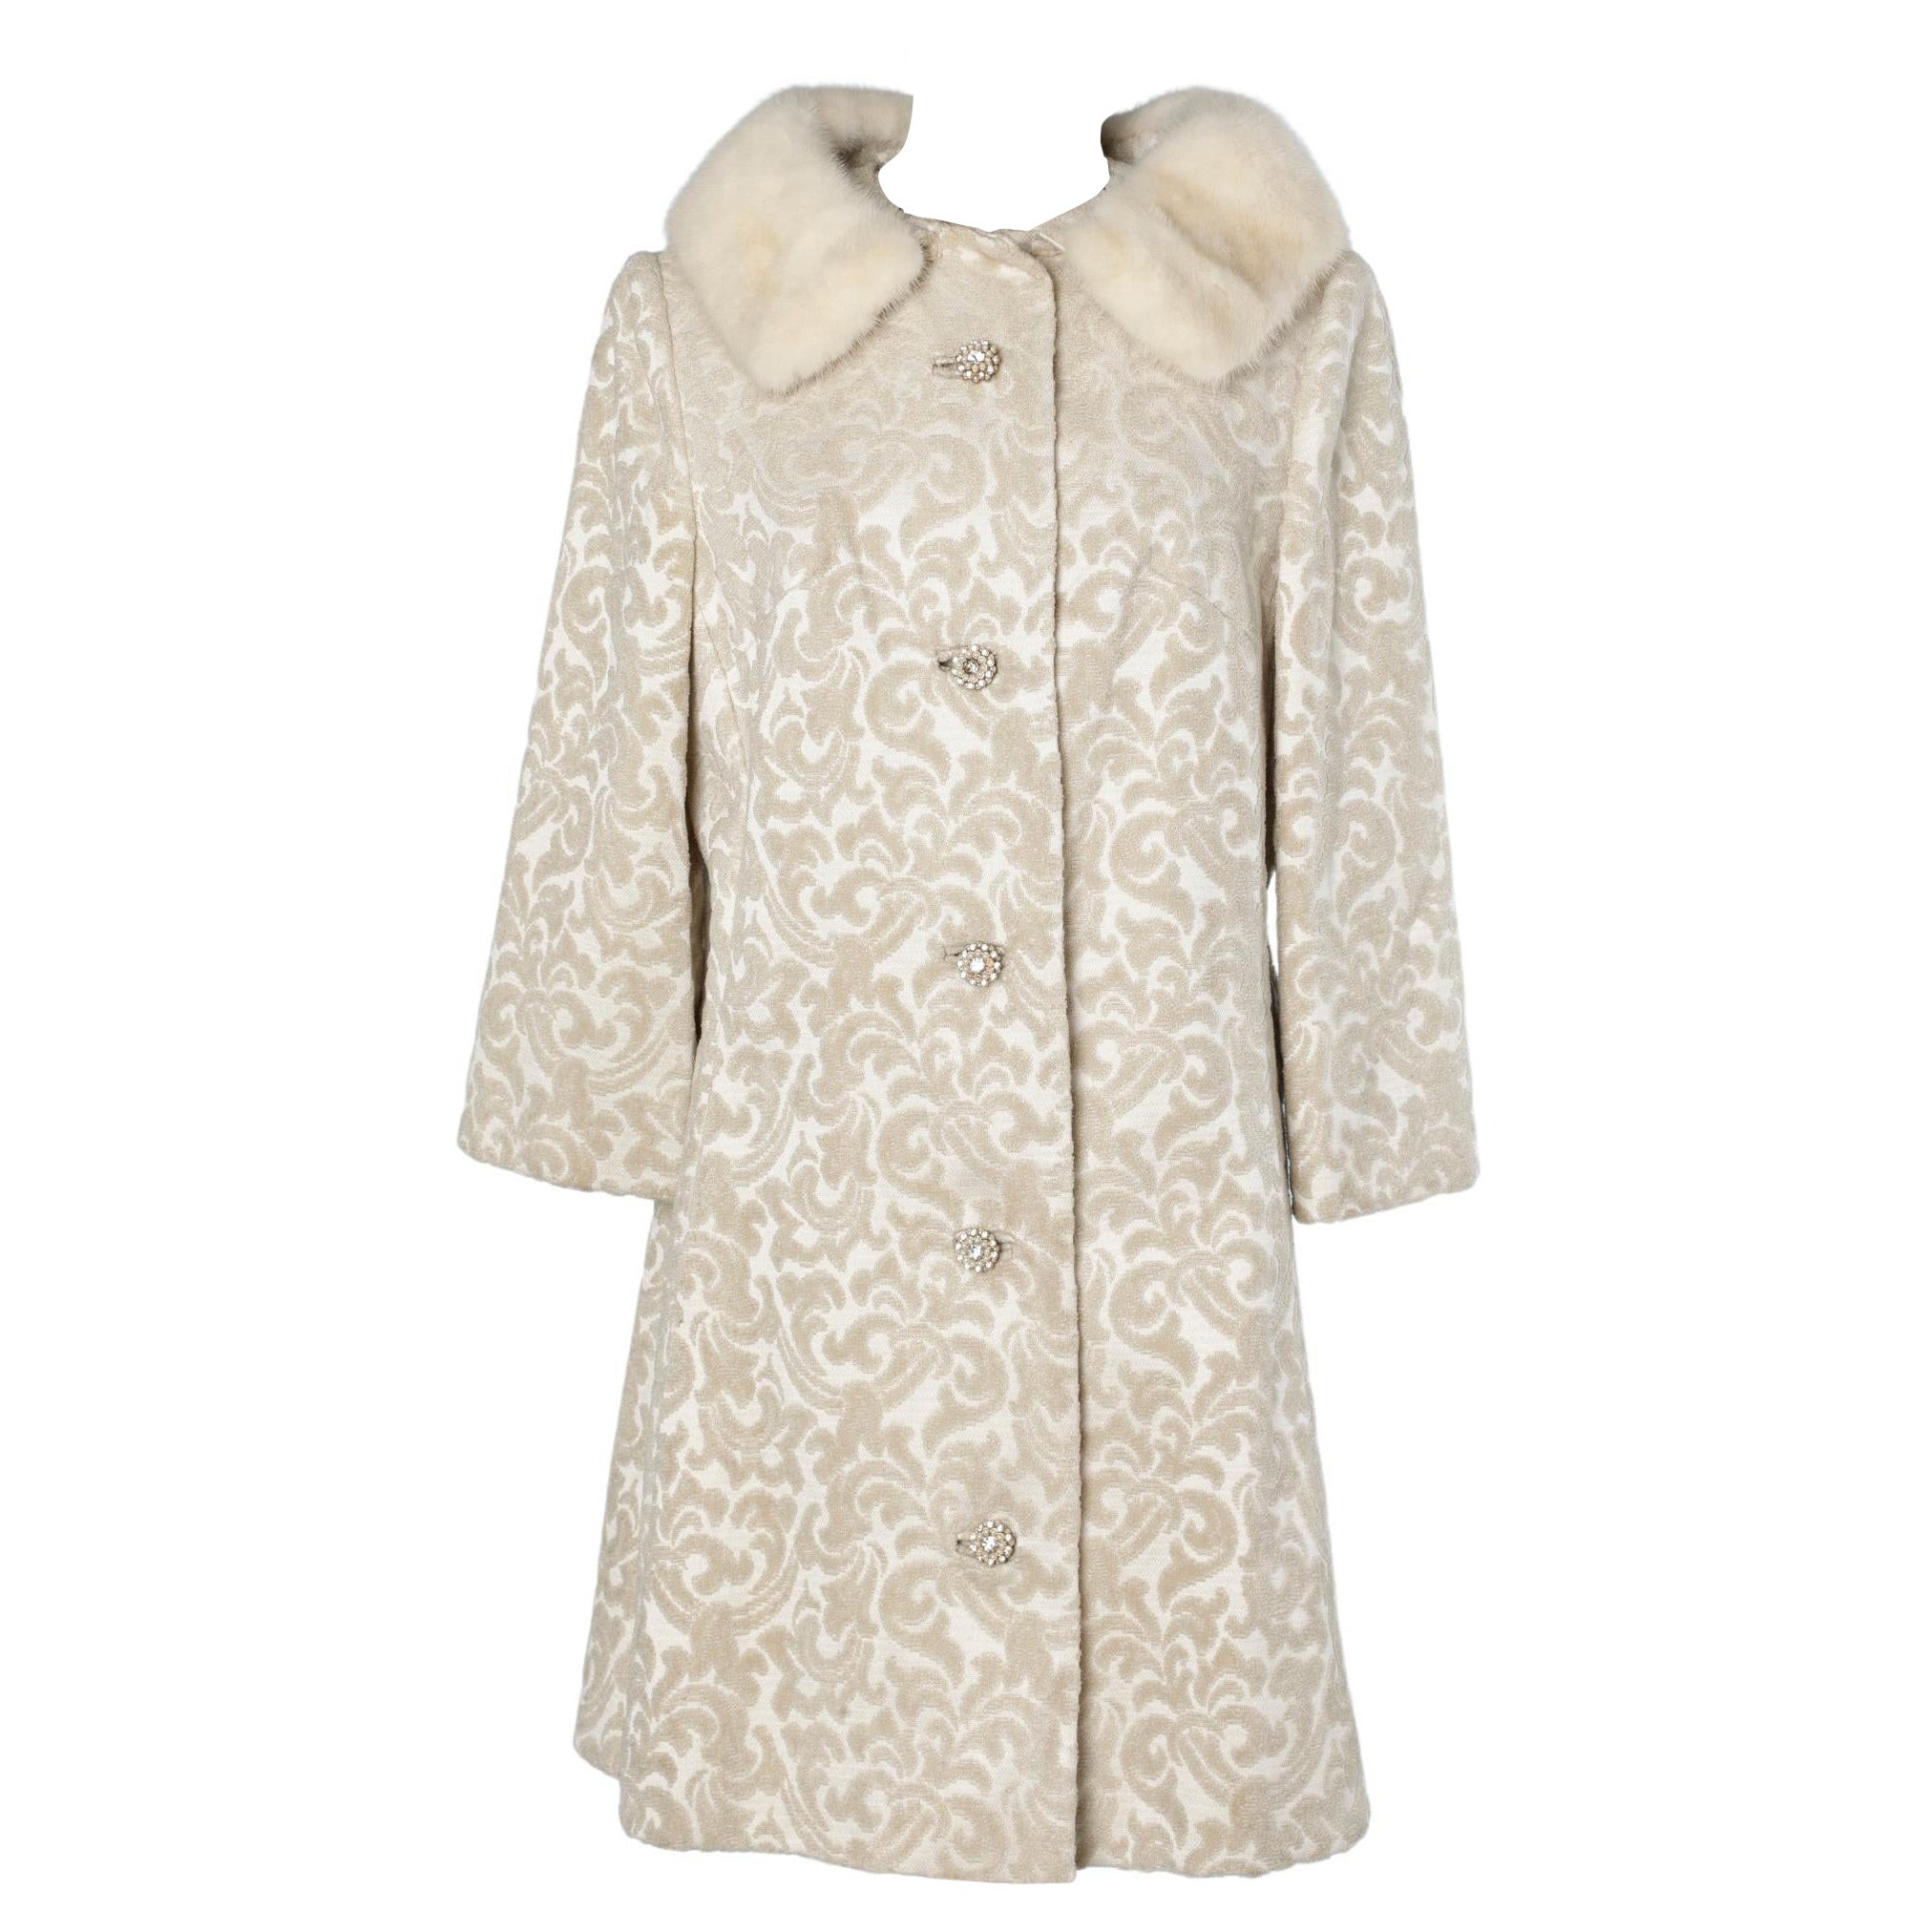 Off-white damasked velvet and mink coat Lilli Ann 